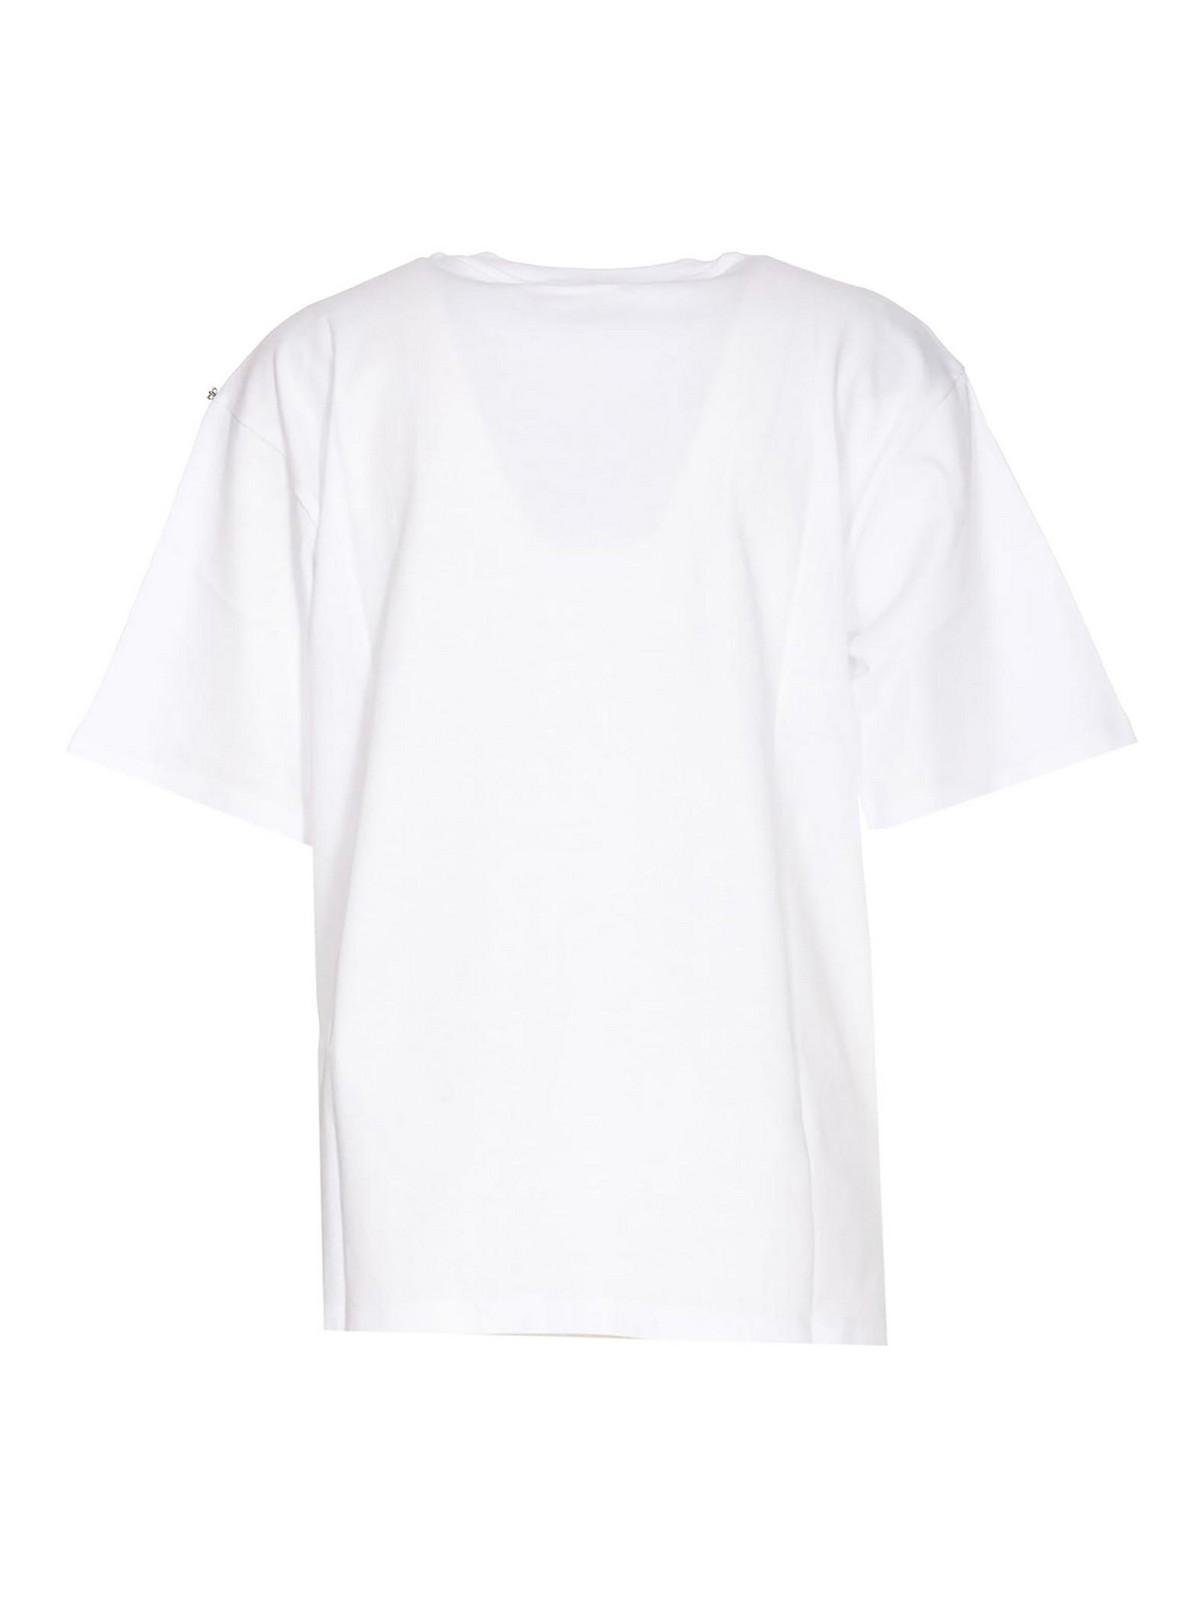 Shop Sportmax Camiseta - Blanco In White